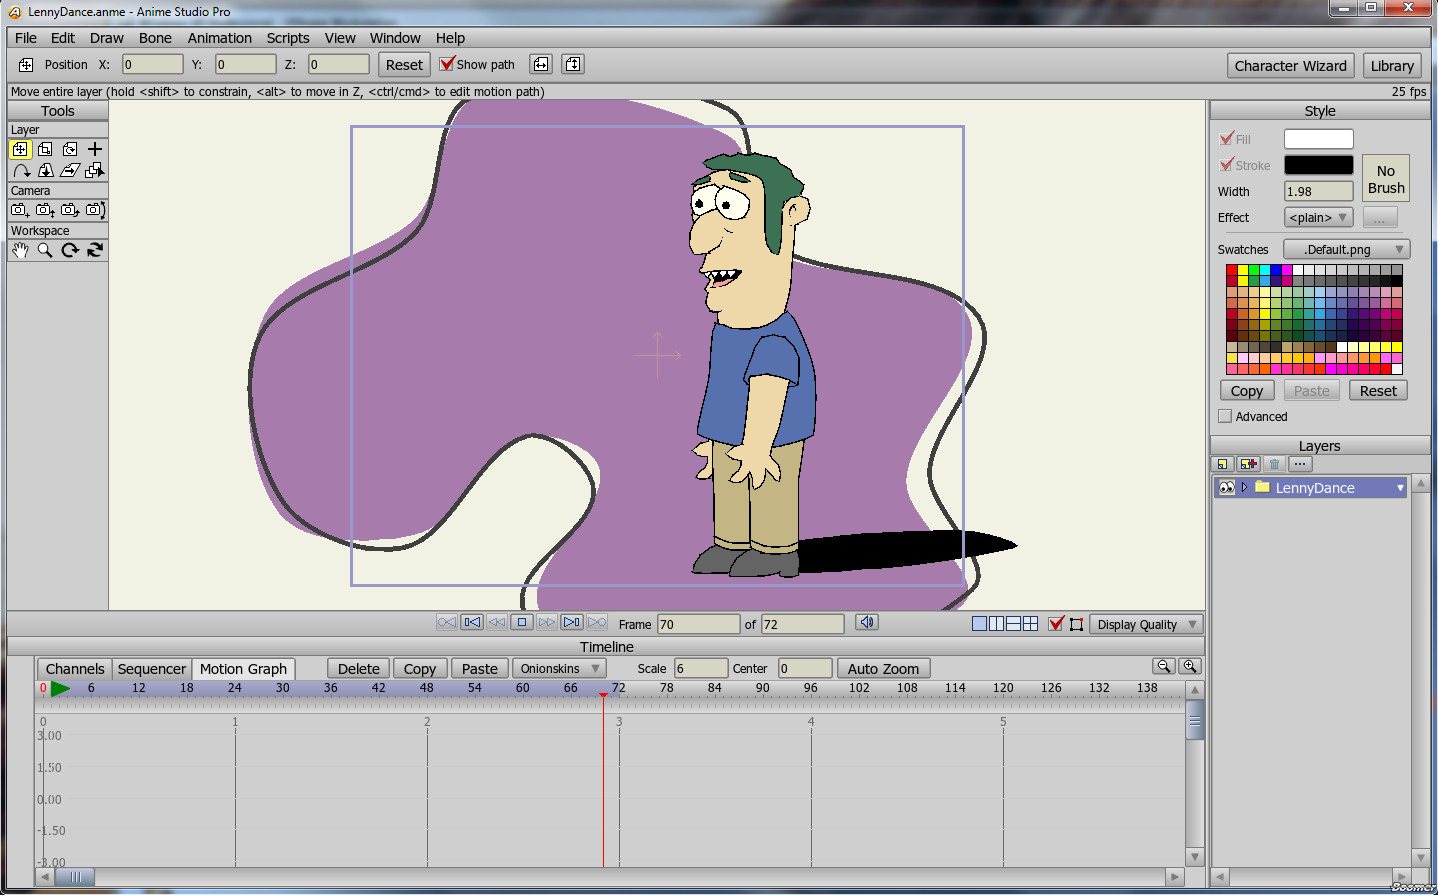 Animation edits